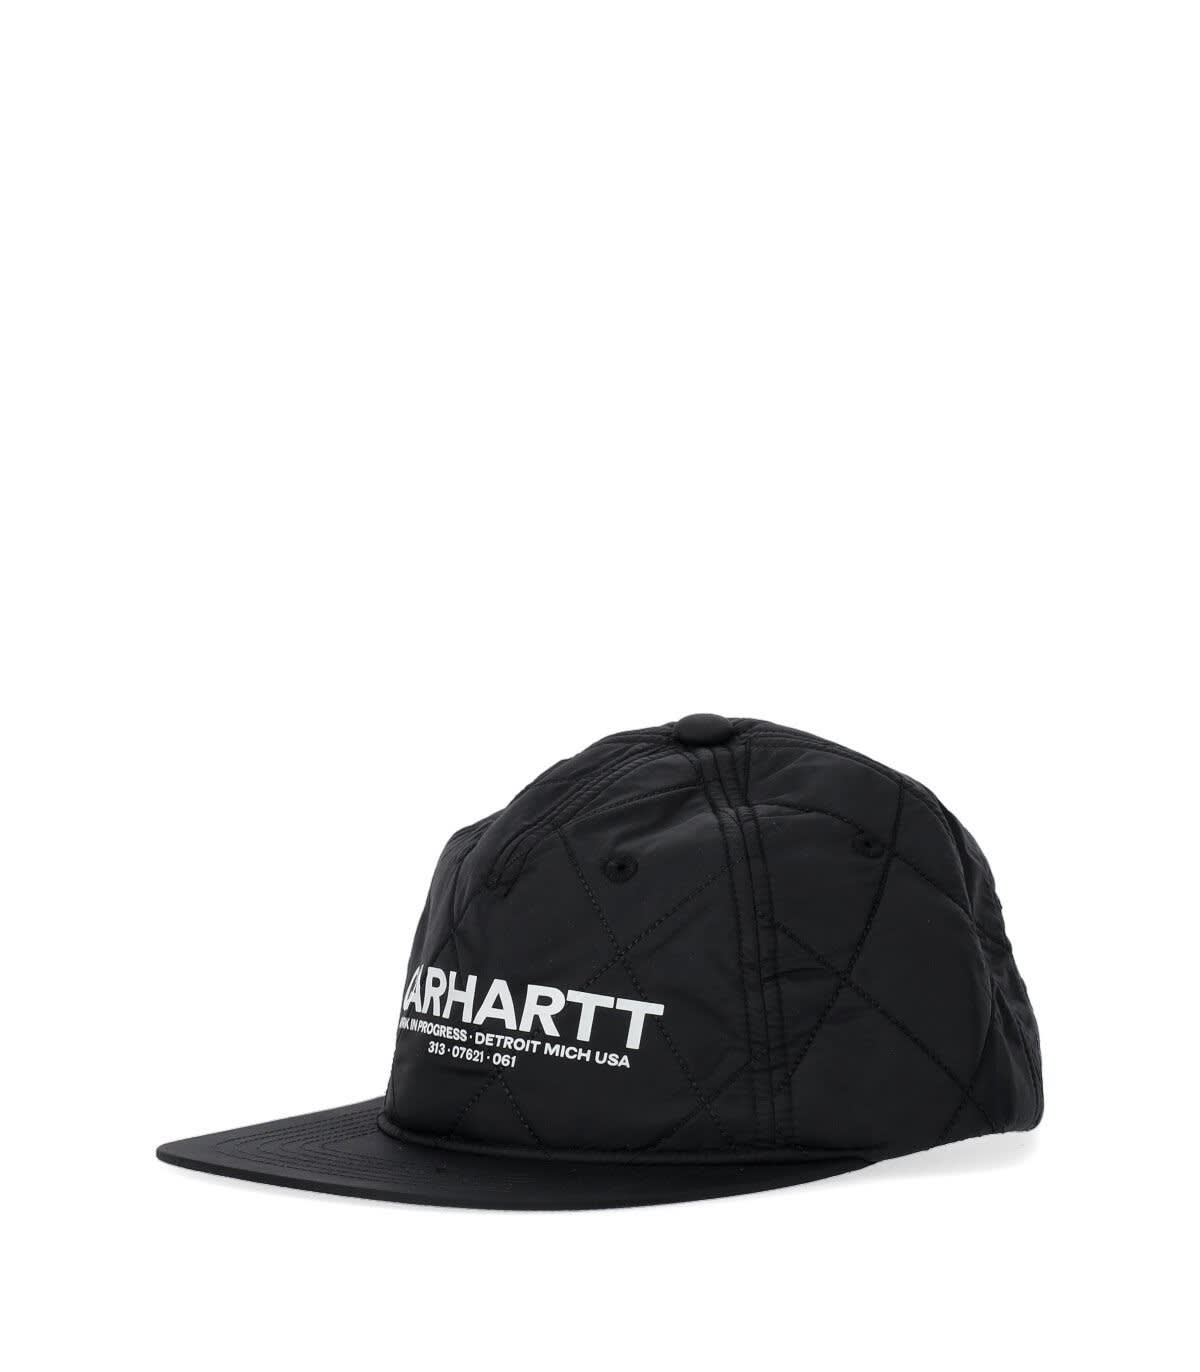 Carhartt Wip Madera Black Cap